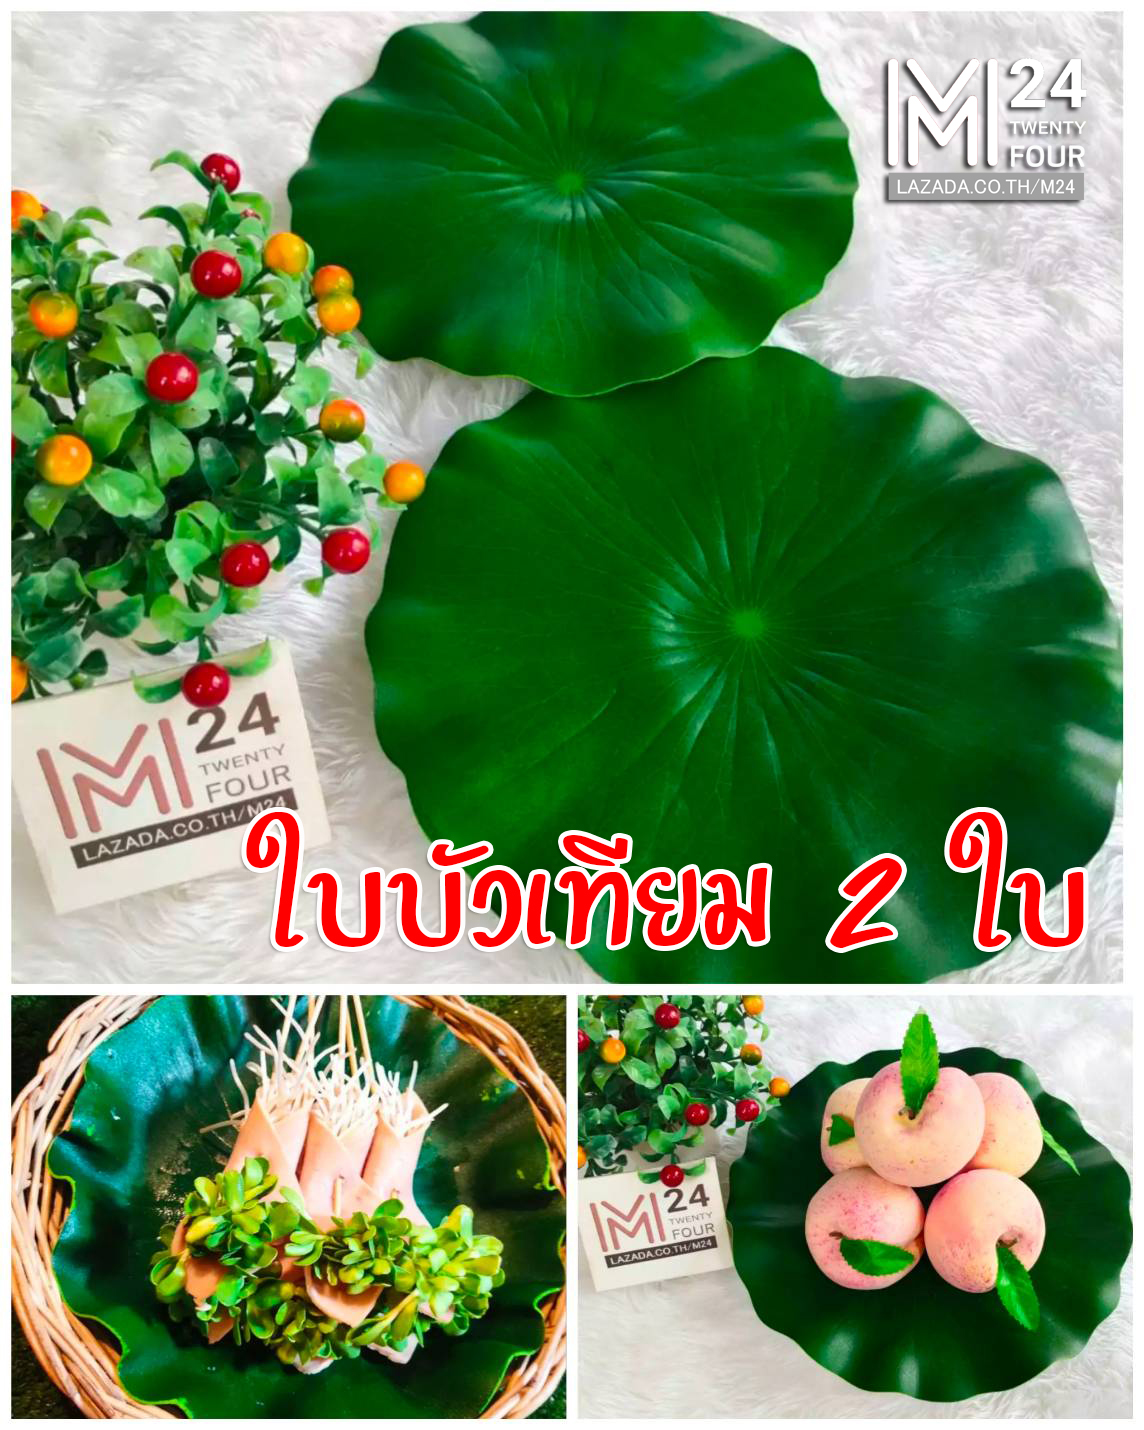 2 ใบ ใบบัวปลอม ใบบัว ใบไม้ ใบไม้เทียม ใบ ไม้ บัว ปลอม จำลอง ใบไม้ปลอม เสมือนจริง ต้นไม้ พืช ธรรมชาติ ประดับ แต่งบ้าน โต๊ะอาหาร lotus leaf m24 4289